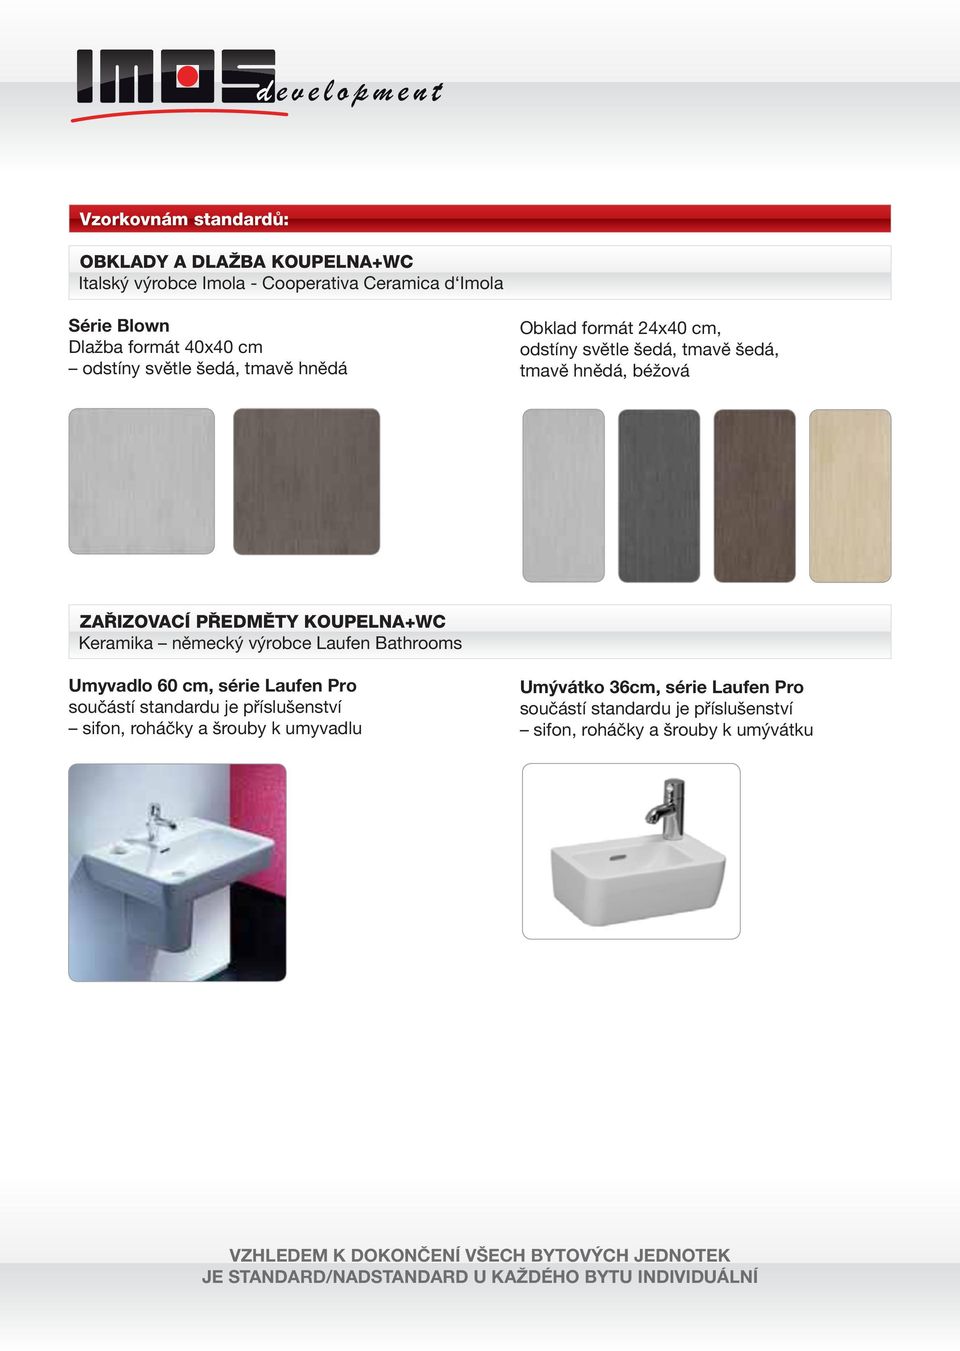 PŘEDMĚTY KOUPELNA+WC Keramika německý výrobce Laufen Bathrooms Umyvadlo 60 cm, série Laufen Pro součástí standardu je příslušenství